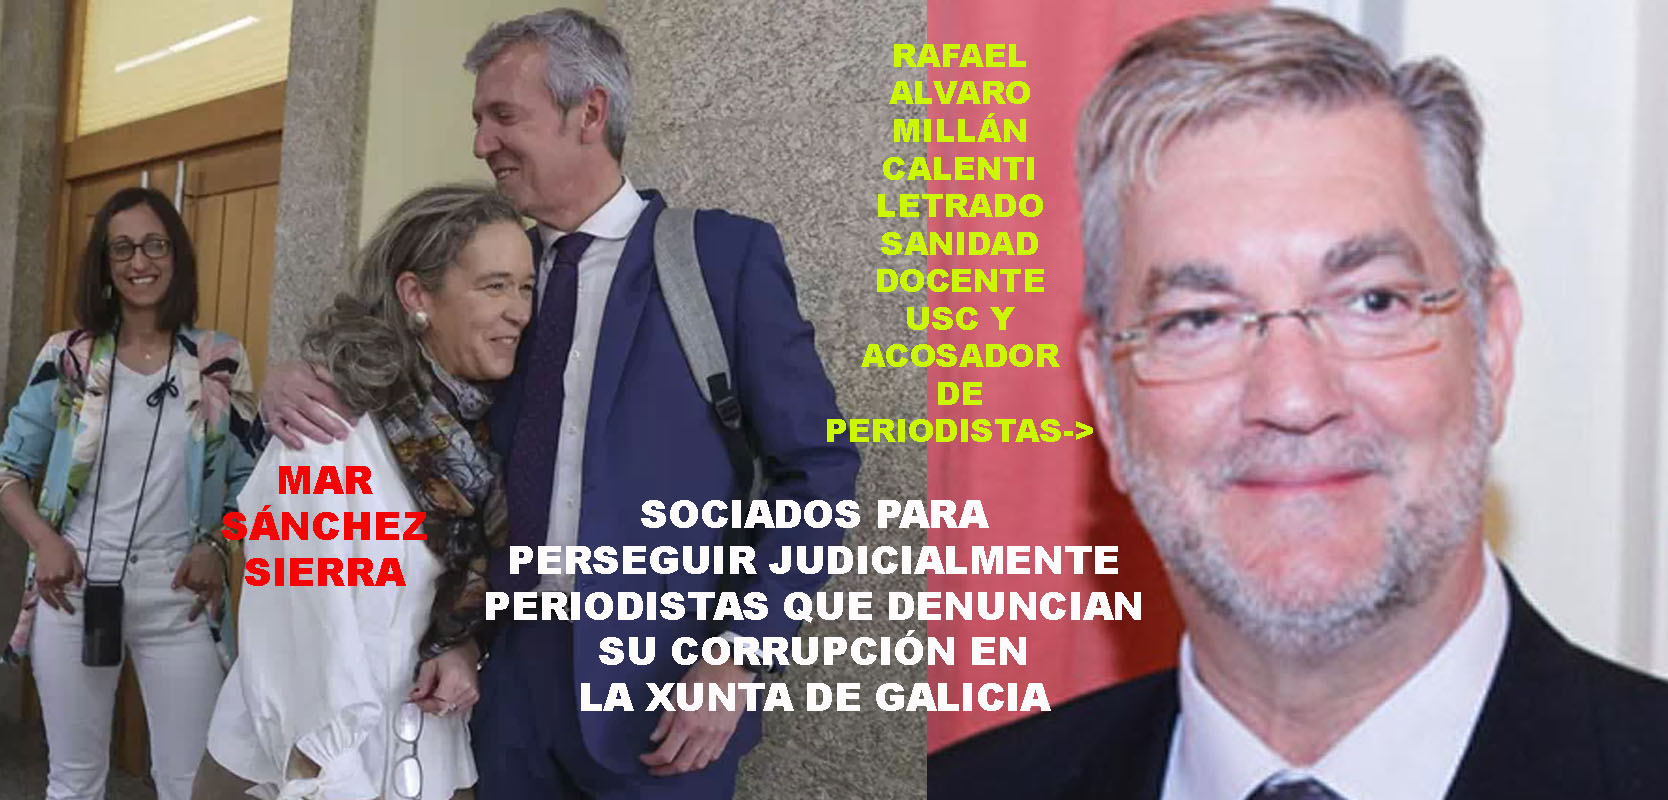 Xornal Galicia - Pladesemapesga presenta denuncia penal contra Mar Sánchez  Sierra y Rafael Millán Calenti por delitos del art. 404 y artículo 542 C.P  tras impedir derechos legales a la entidad.